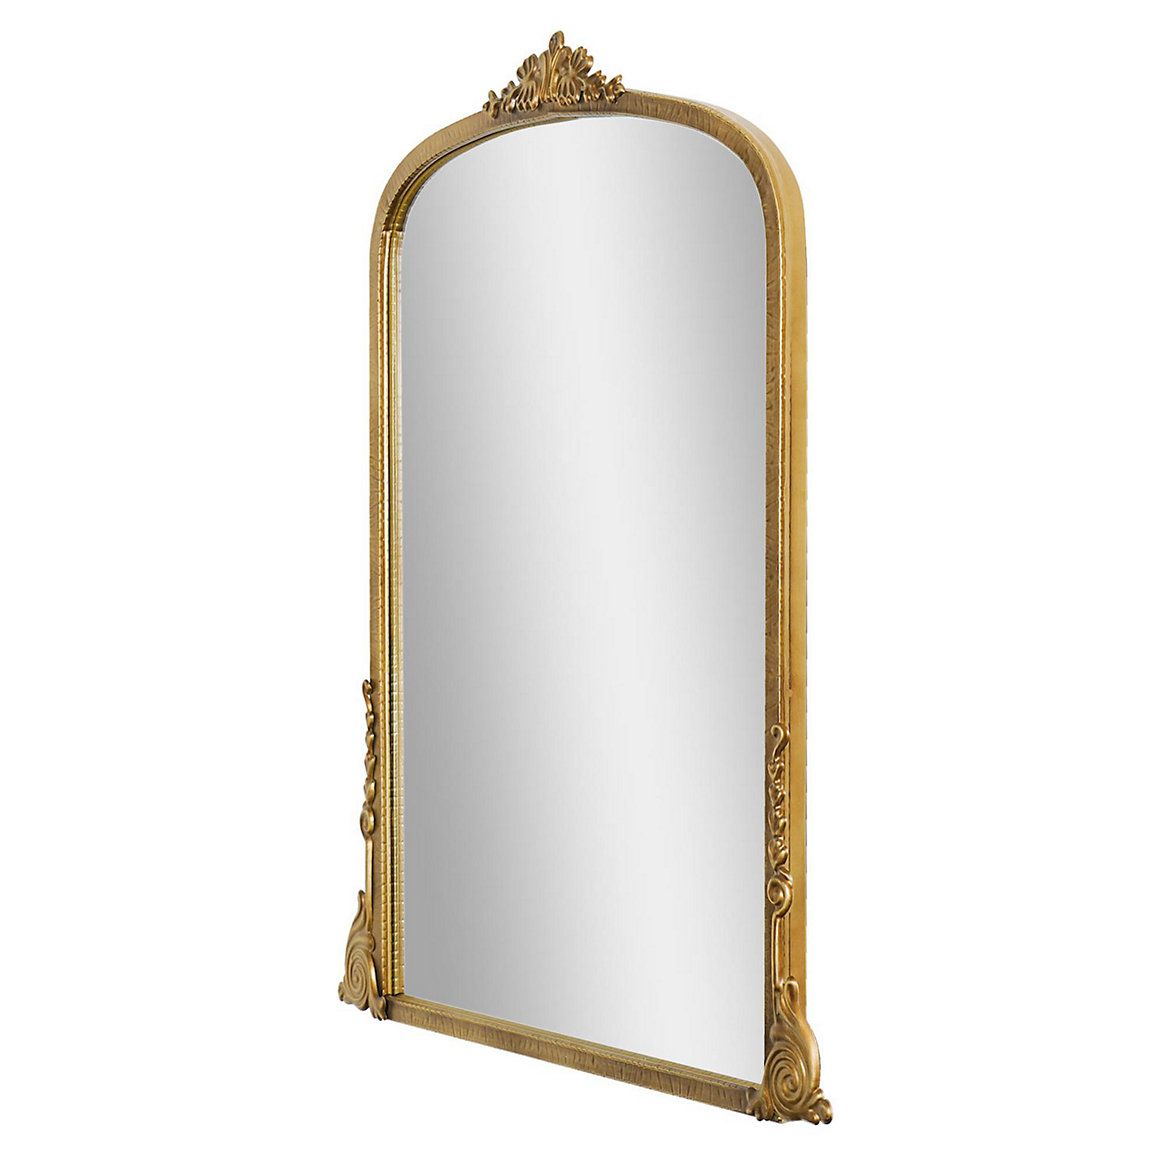 Head West Brass Ornate Wall Mirror | Kohls | Kohl's